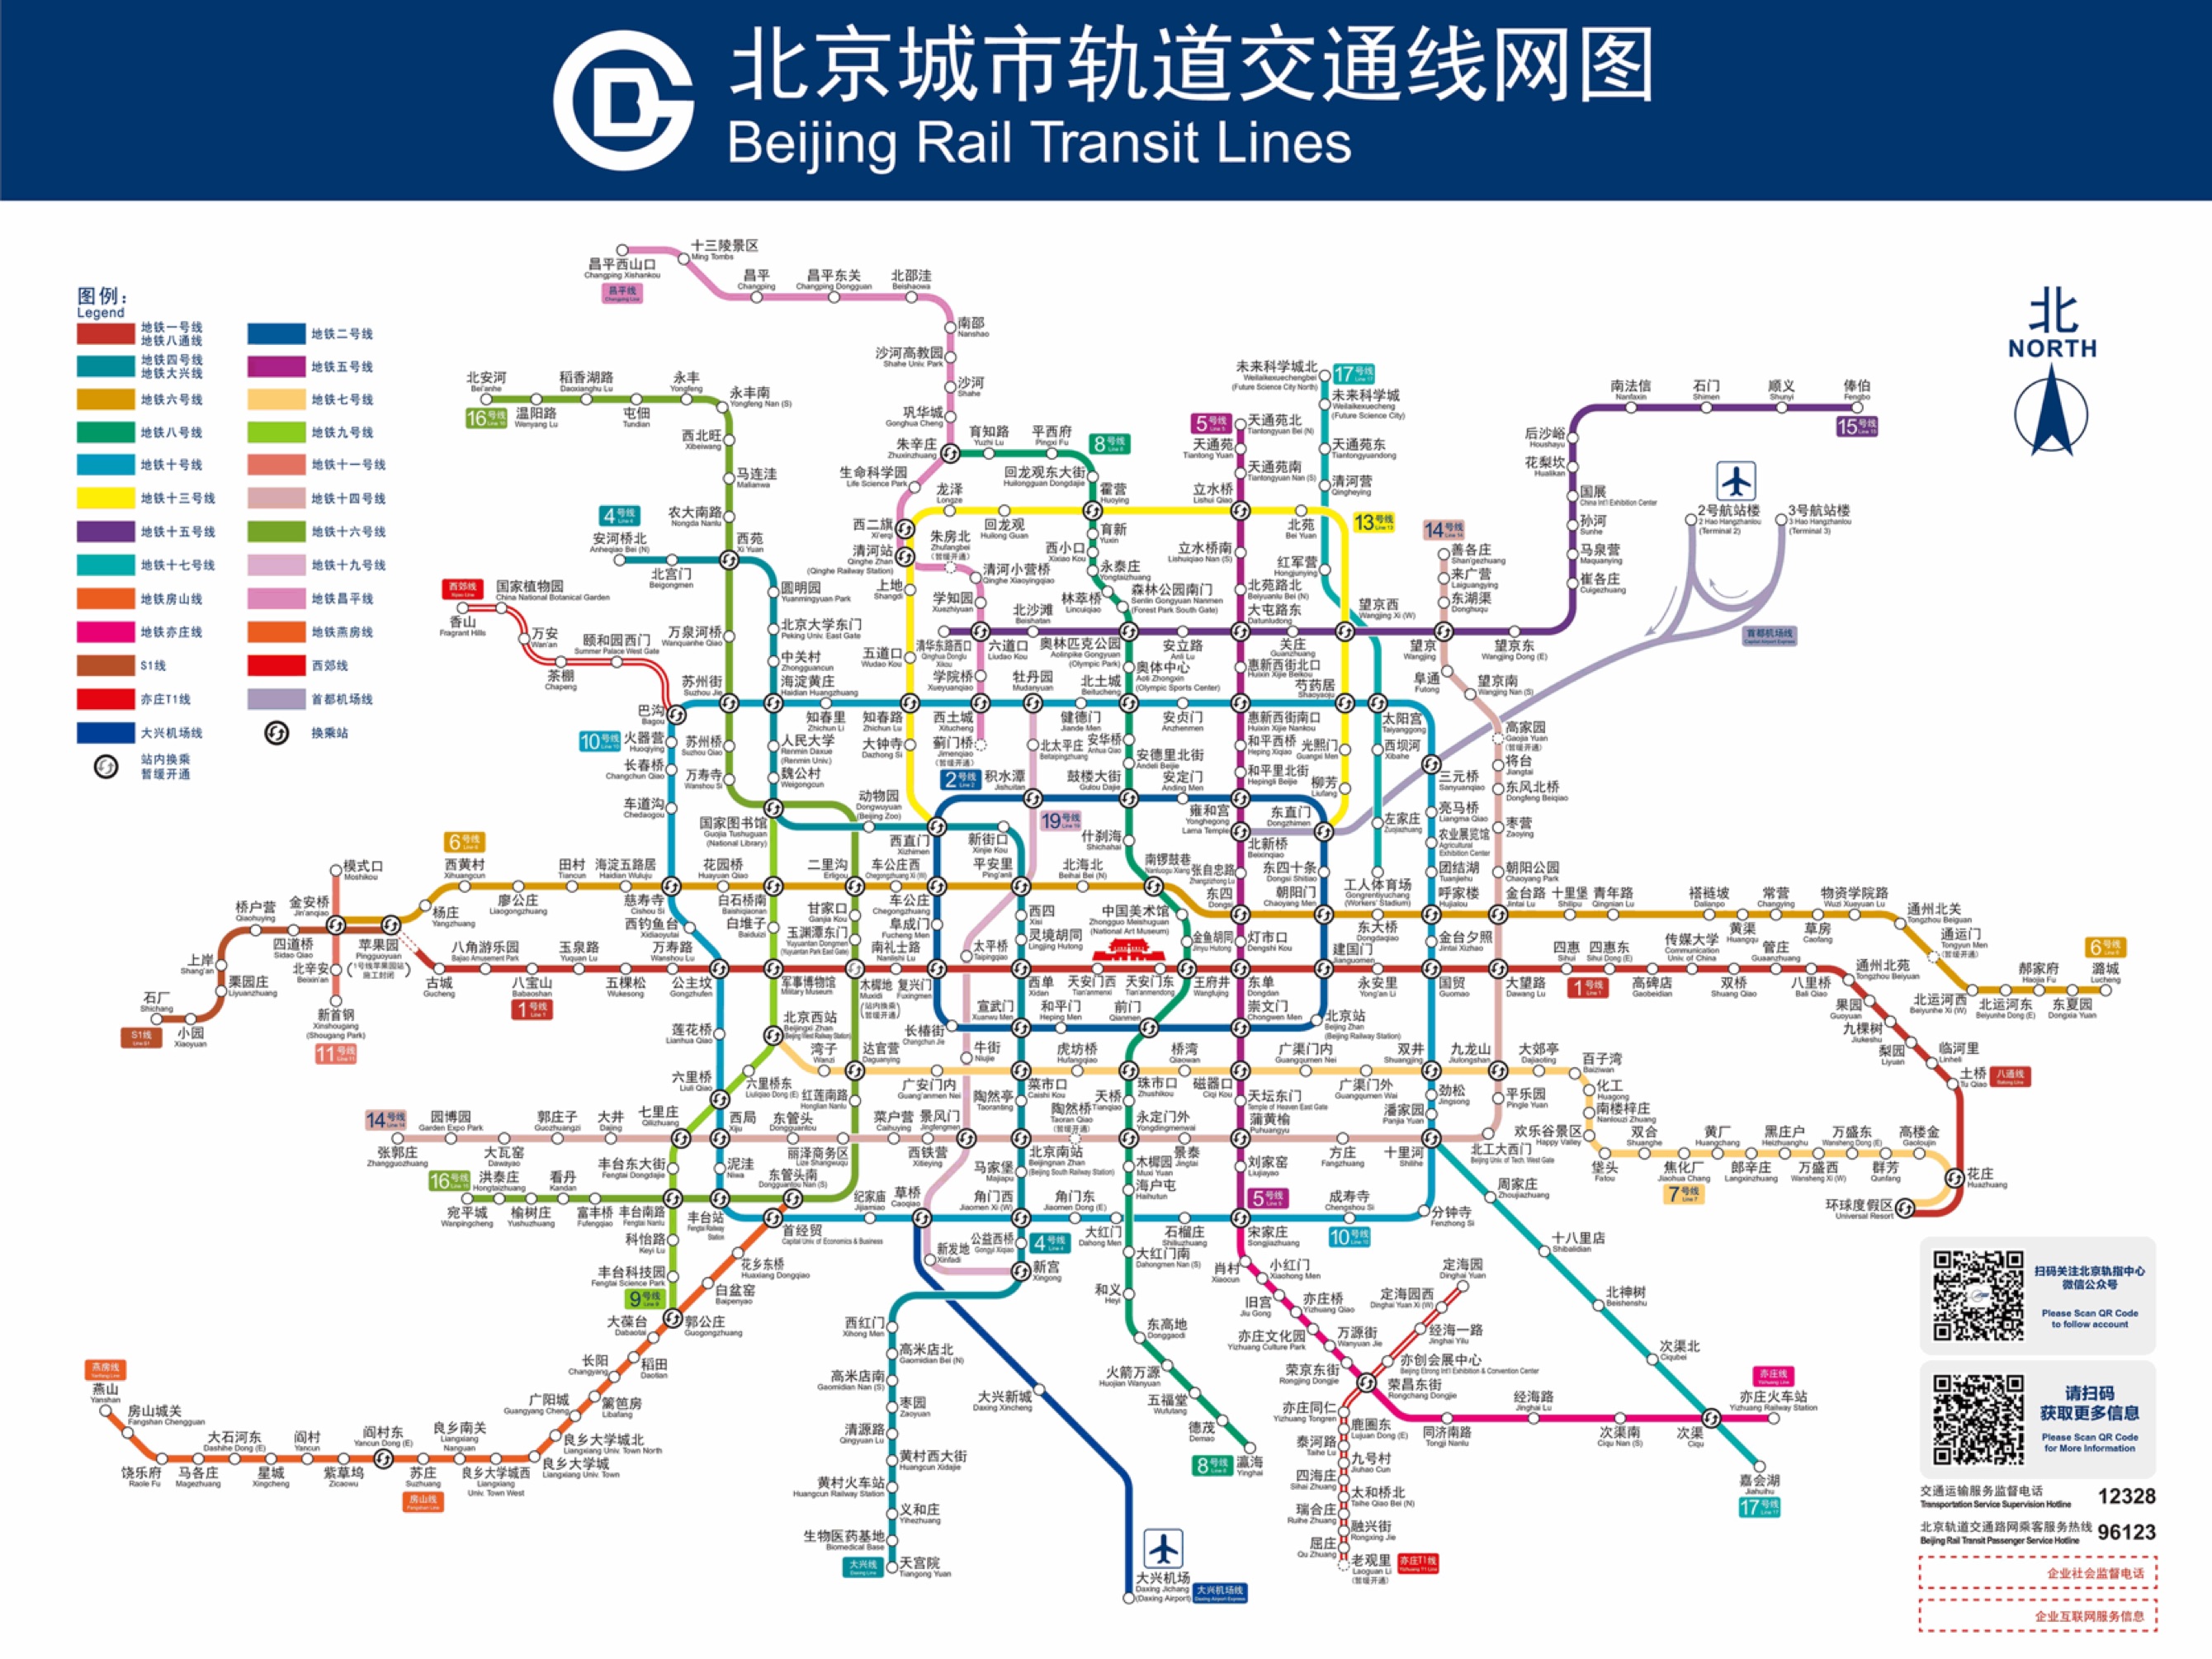 假如北京地铁站数小于20的线路全部停运……